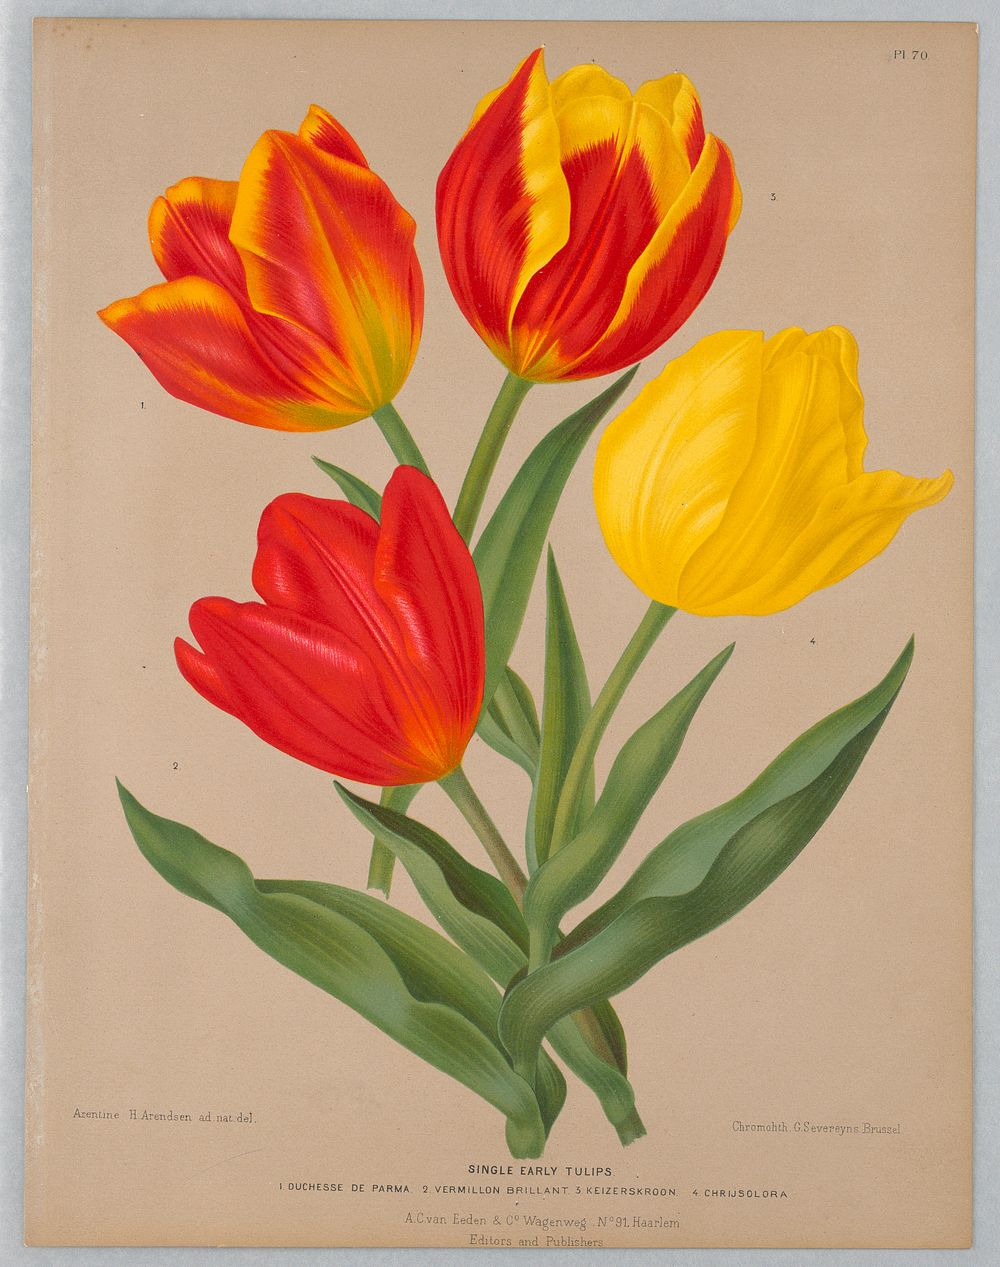 Single Early Tulips, Plate 70 from A. C. Van Eeden's "Flora of Haarlem"